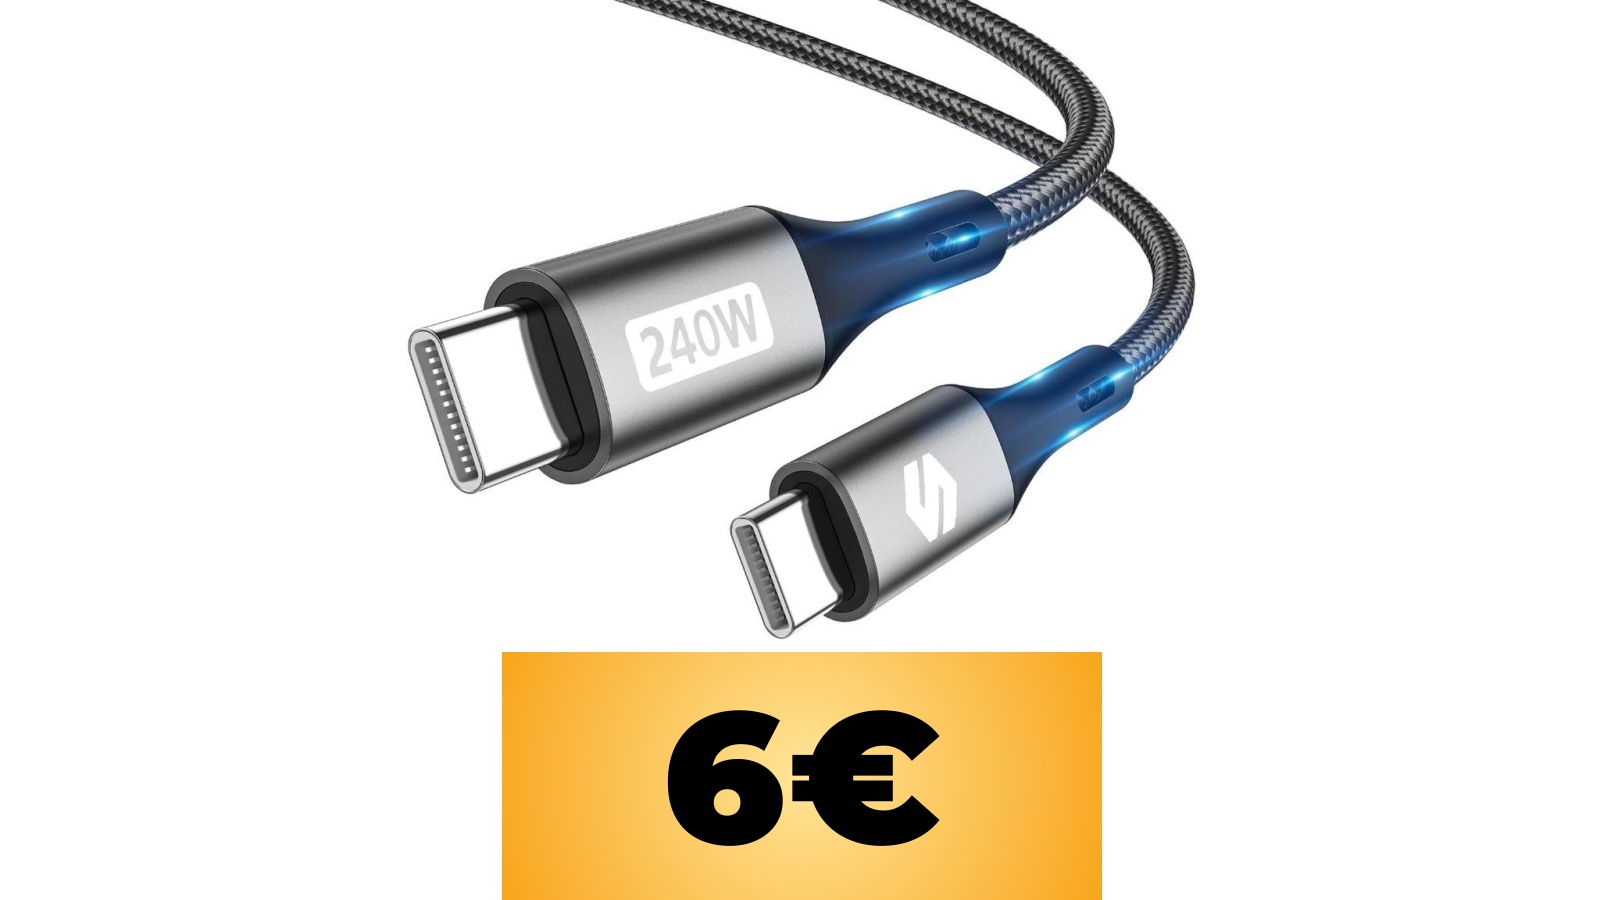 Cavo USB-C Silkland da 240W da 2 metri in super sconto con il coupon e l'offerta di Amazon Italia